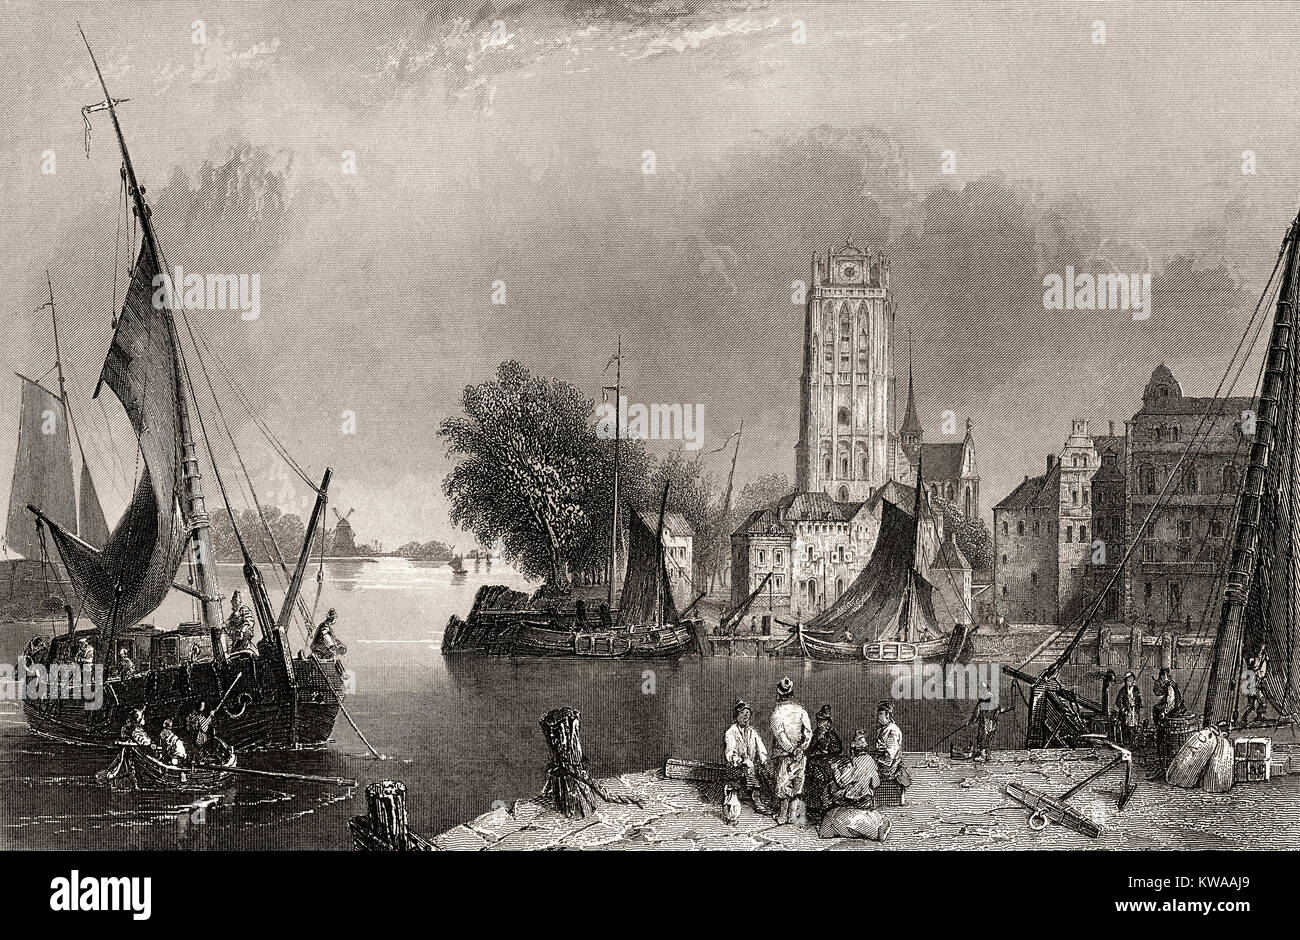 La ville historique de Dordrecht, 18e siècle, l'Europe, Pays-Bas Banque D'Images